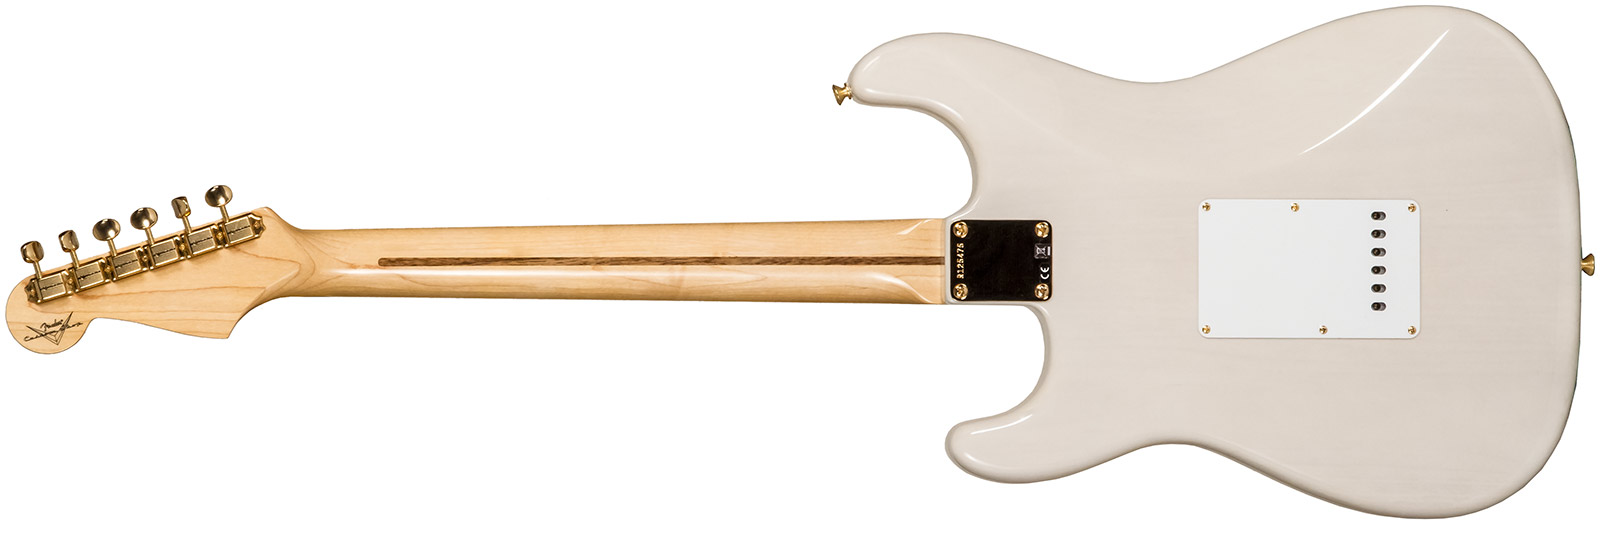 Fender Custom Shop Strat 1957 3s Trem Mn #r125475 - Nos White Blonde - Elektrische gitaar in Str-vorm - Variation 1